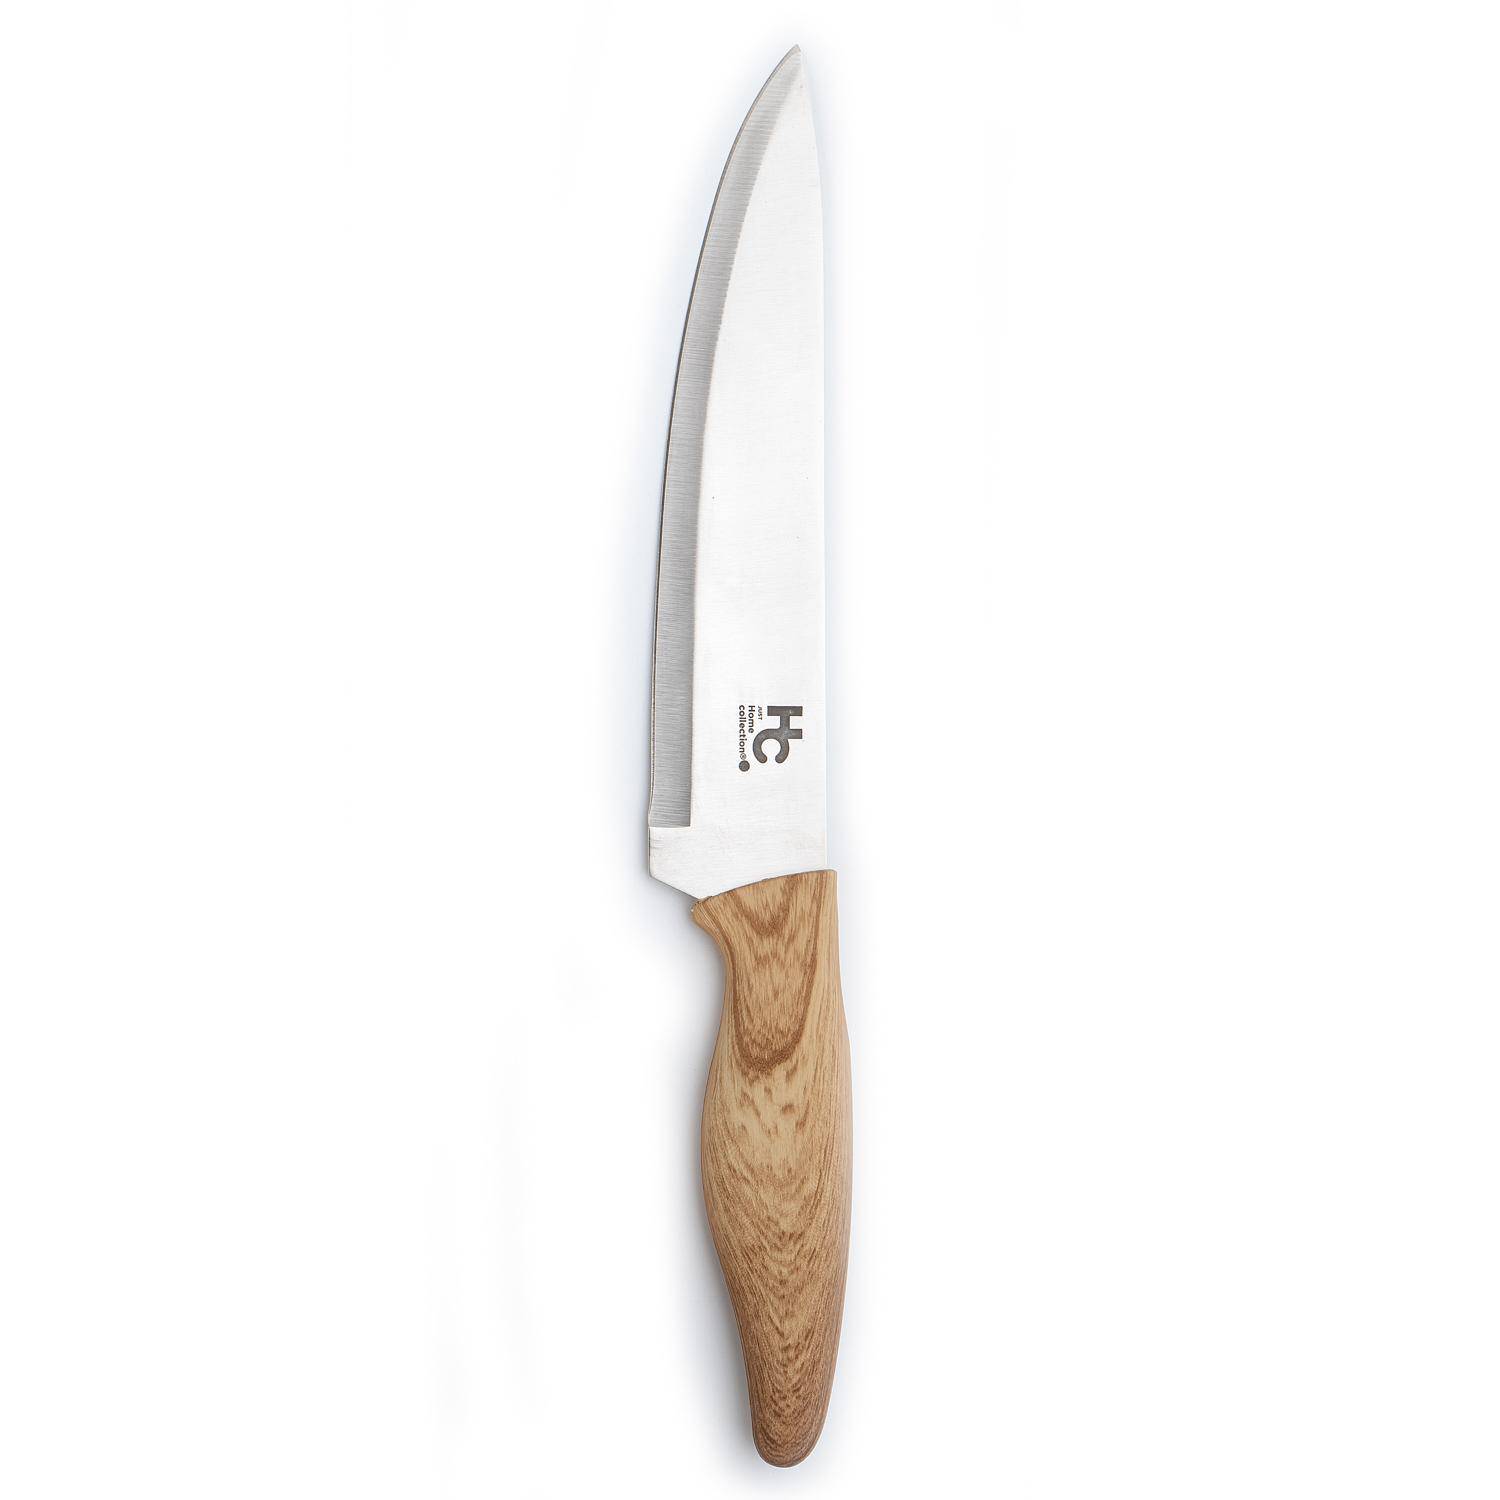 Cuchillo chef de hoja ancha de 20cm. y mango de madera de palisandro